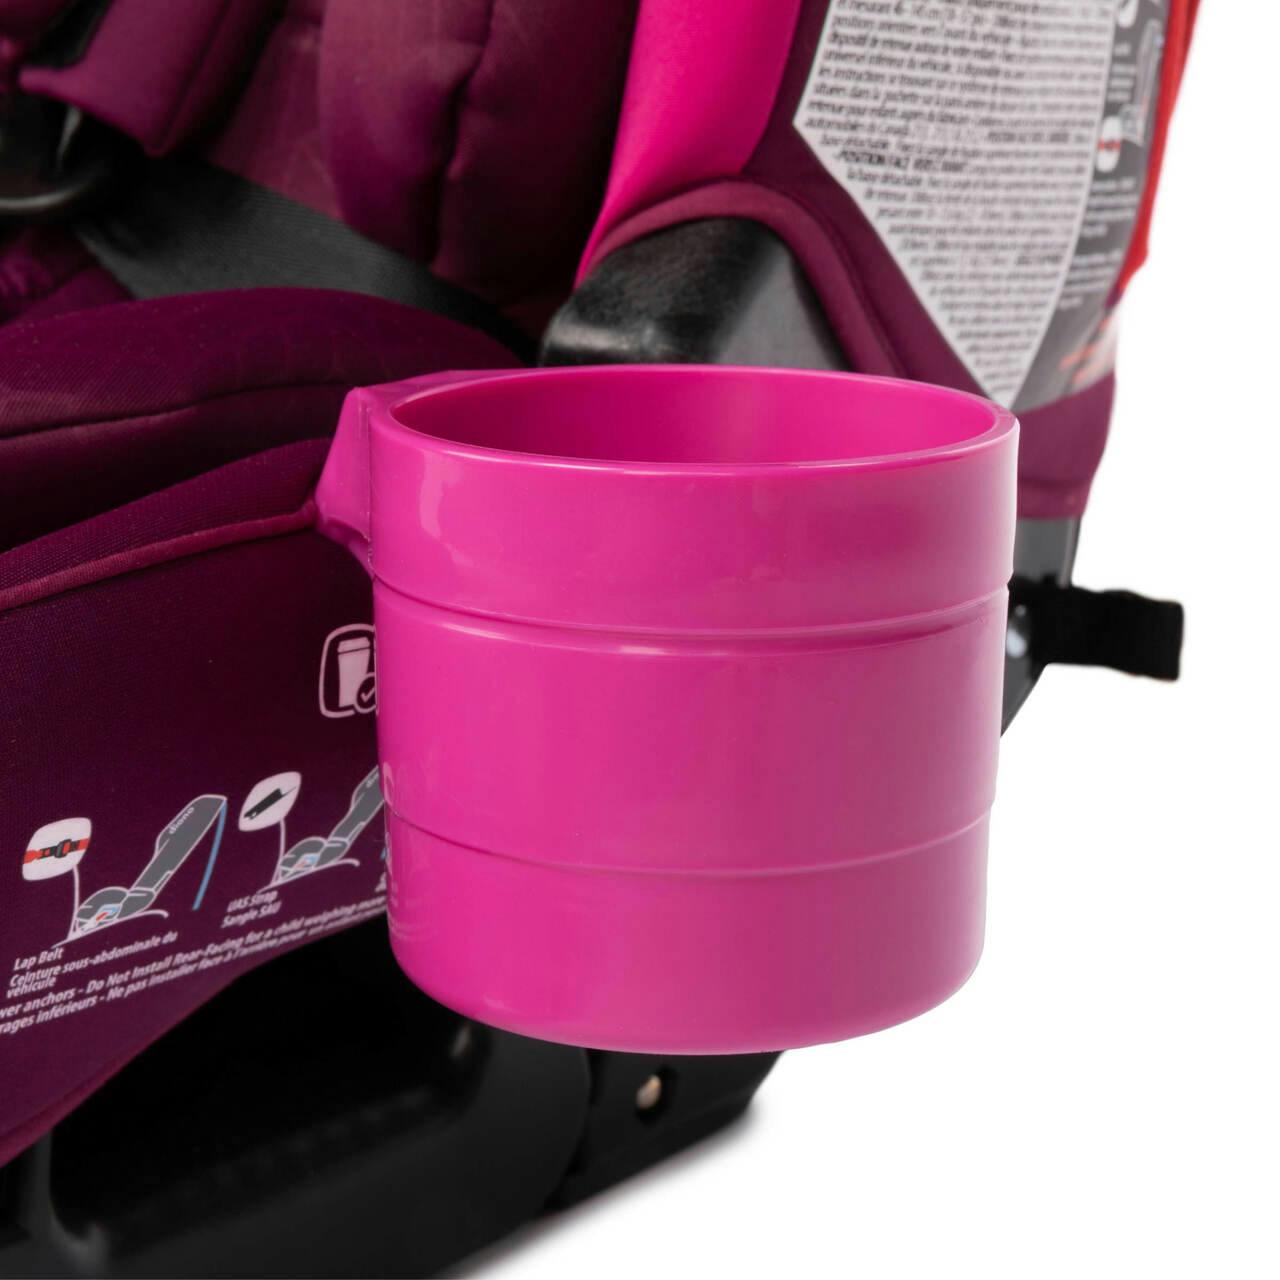 Diono Radian®/Rainier/Everett® Cup Holders - 2 Pack · Purple Plum